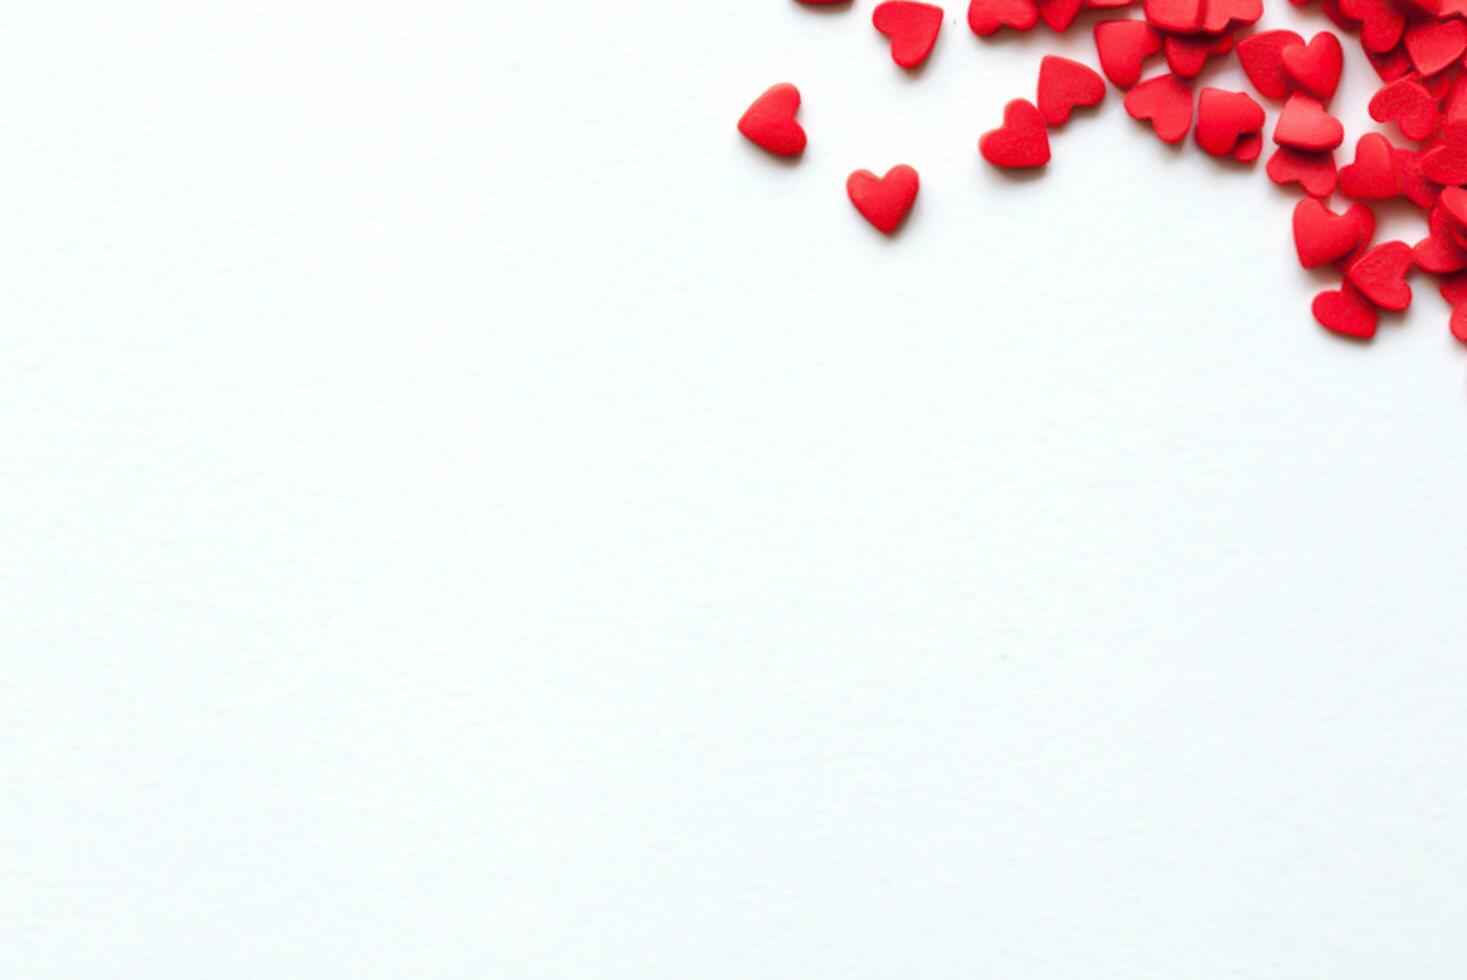 San Valentín día, vistoso papel corazones en línea como un regalo para San Valentín dia.corazon es otoño amor. marco, 3d amor me gusta corazón íconos flotante en pequeño rojo presente regalo caja con febrero ,14 enamorado día foto